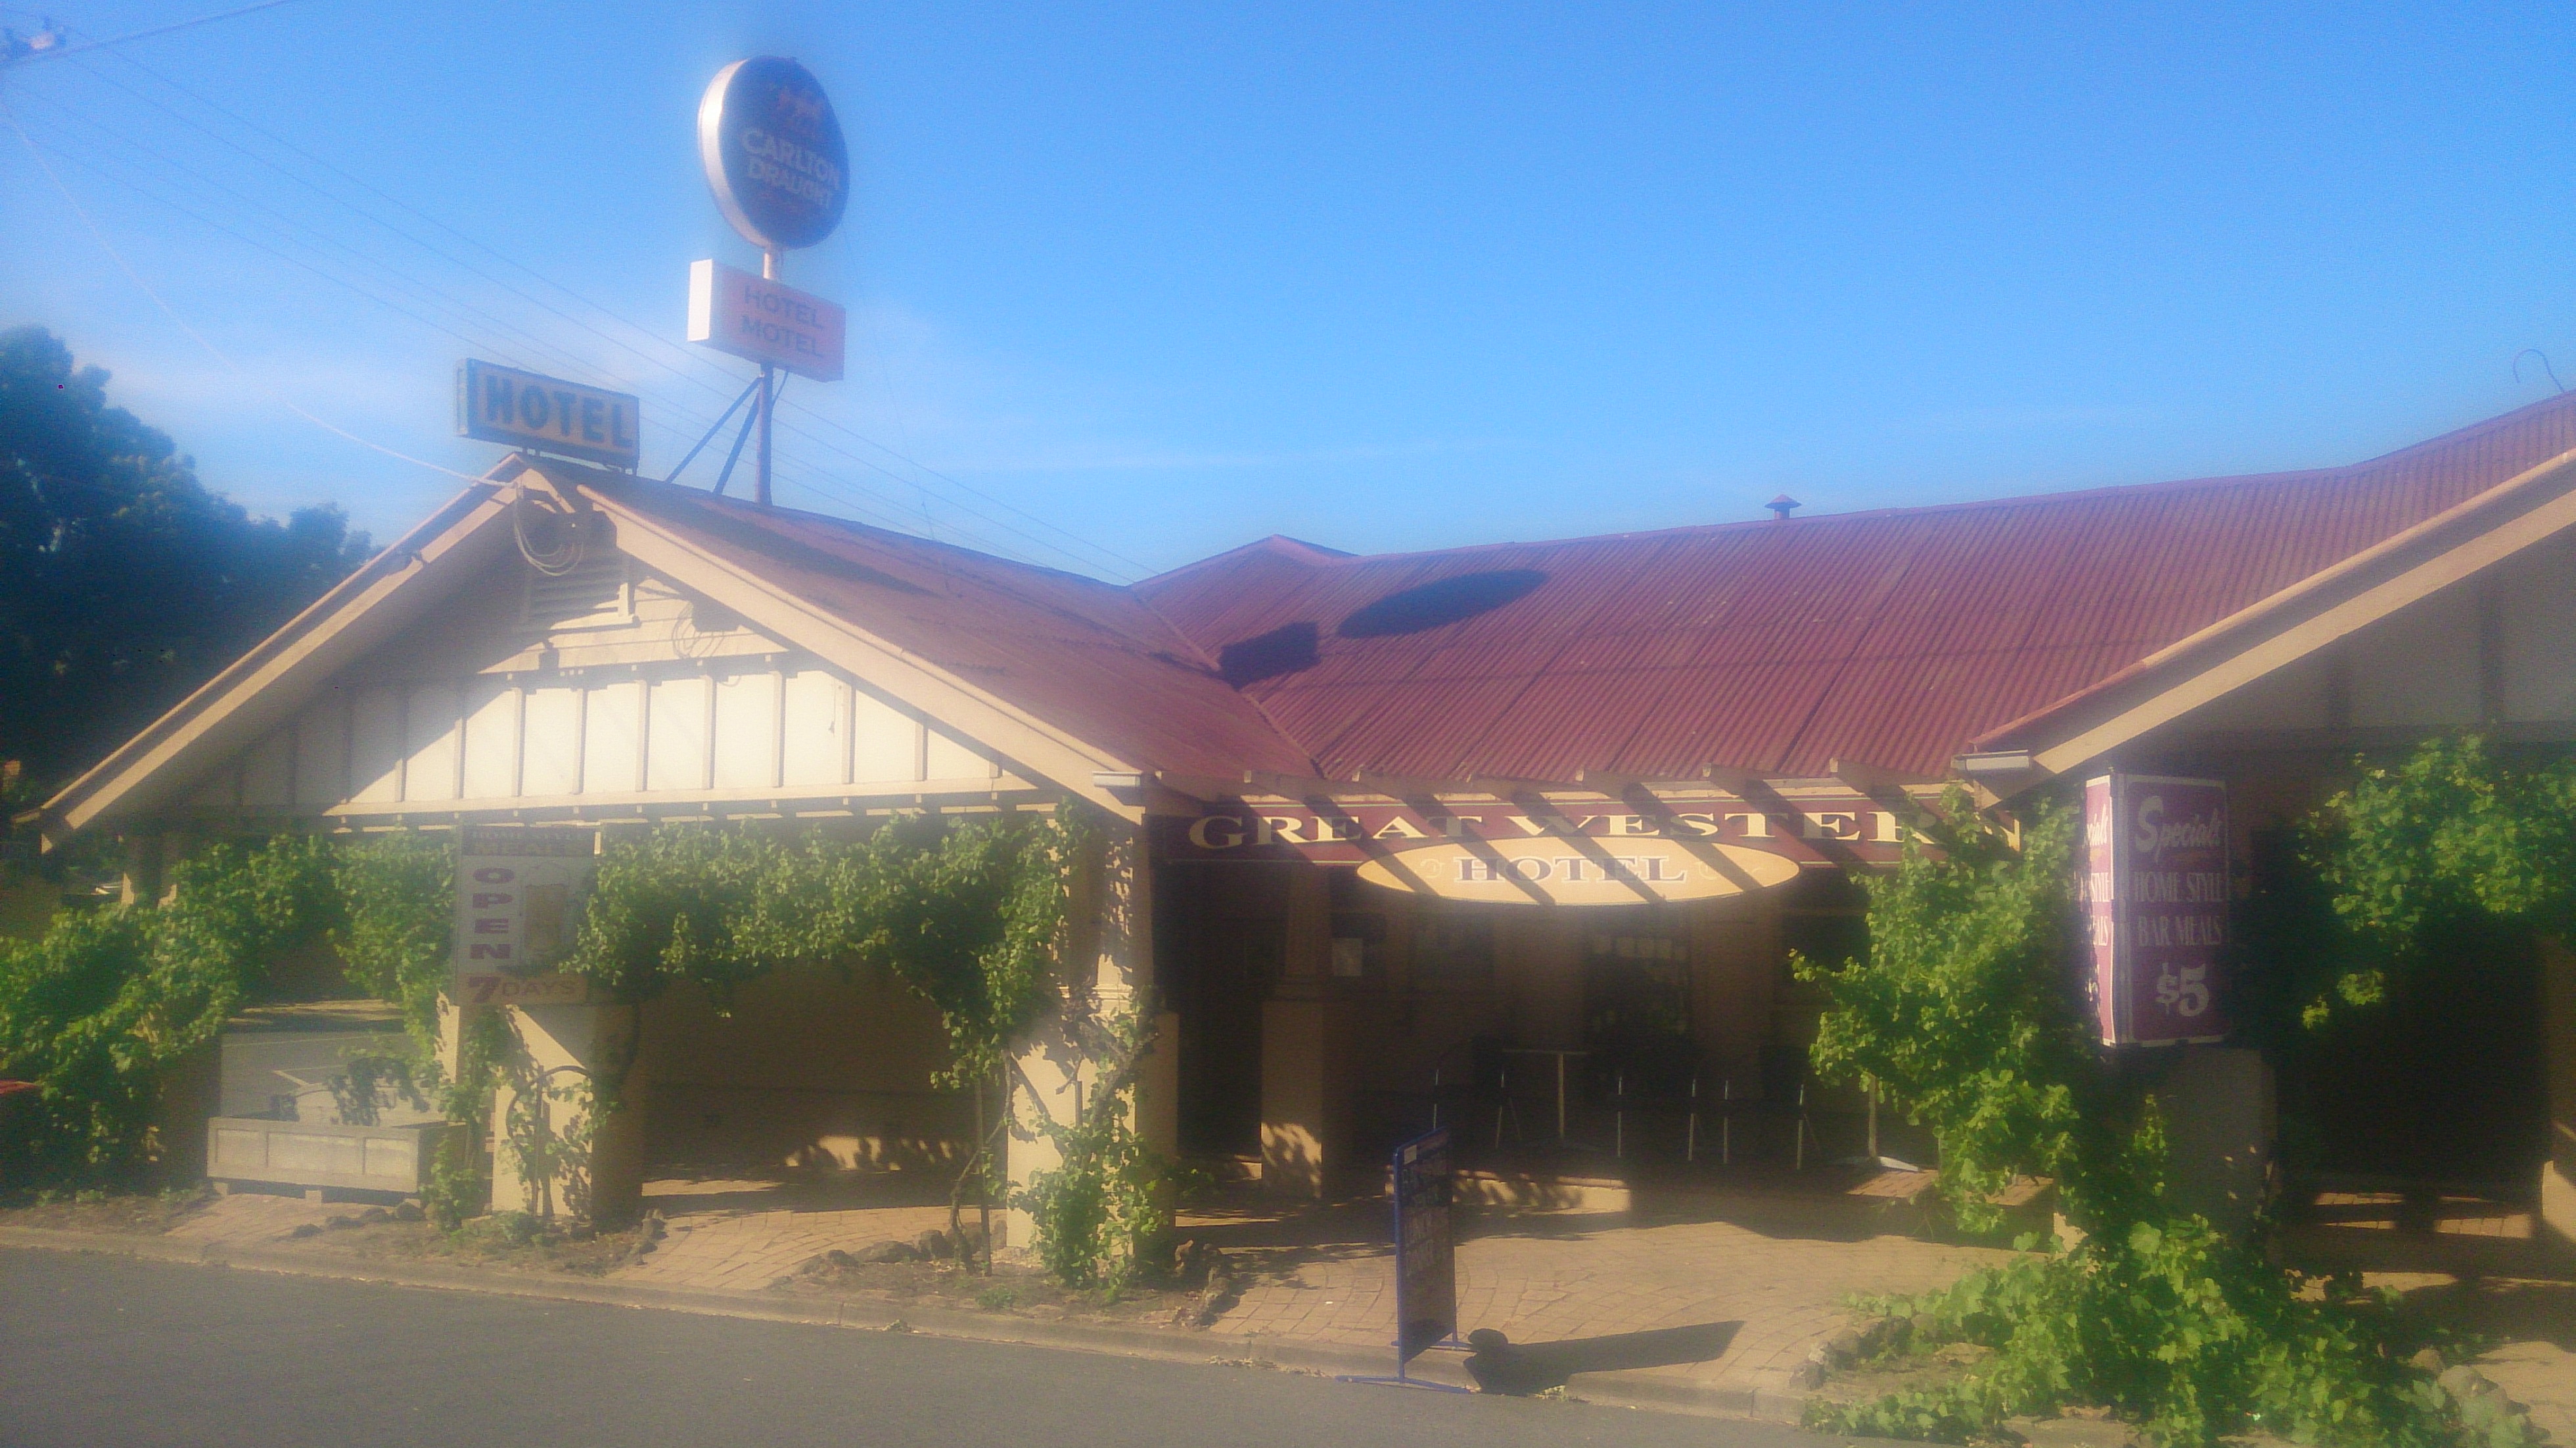 Great Western Hotel Motel - Accommodation Mooloolaba